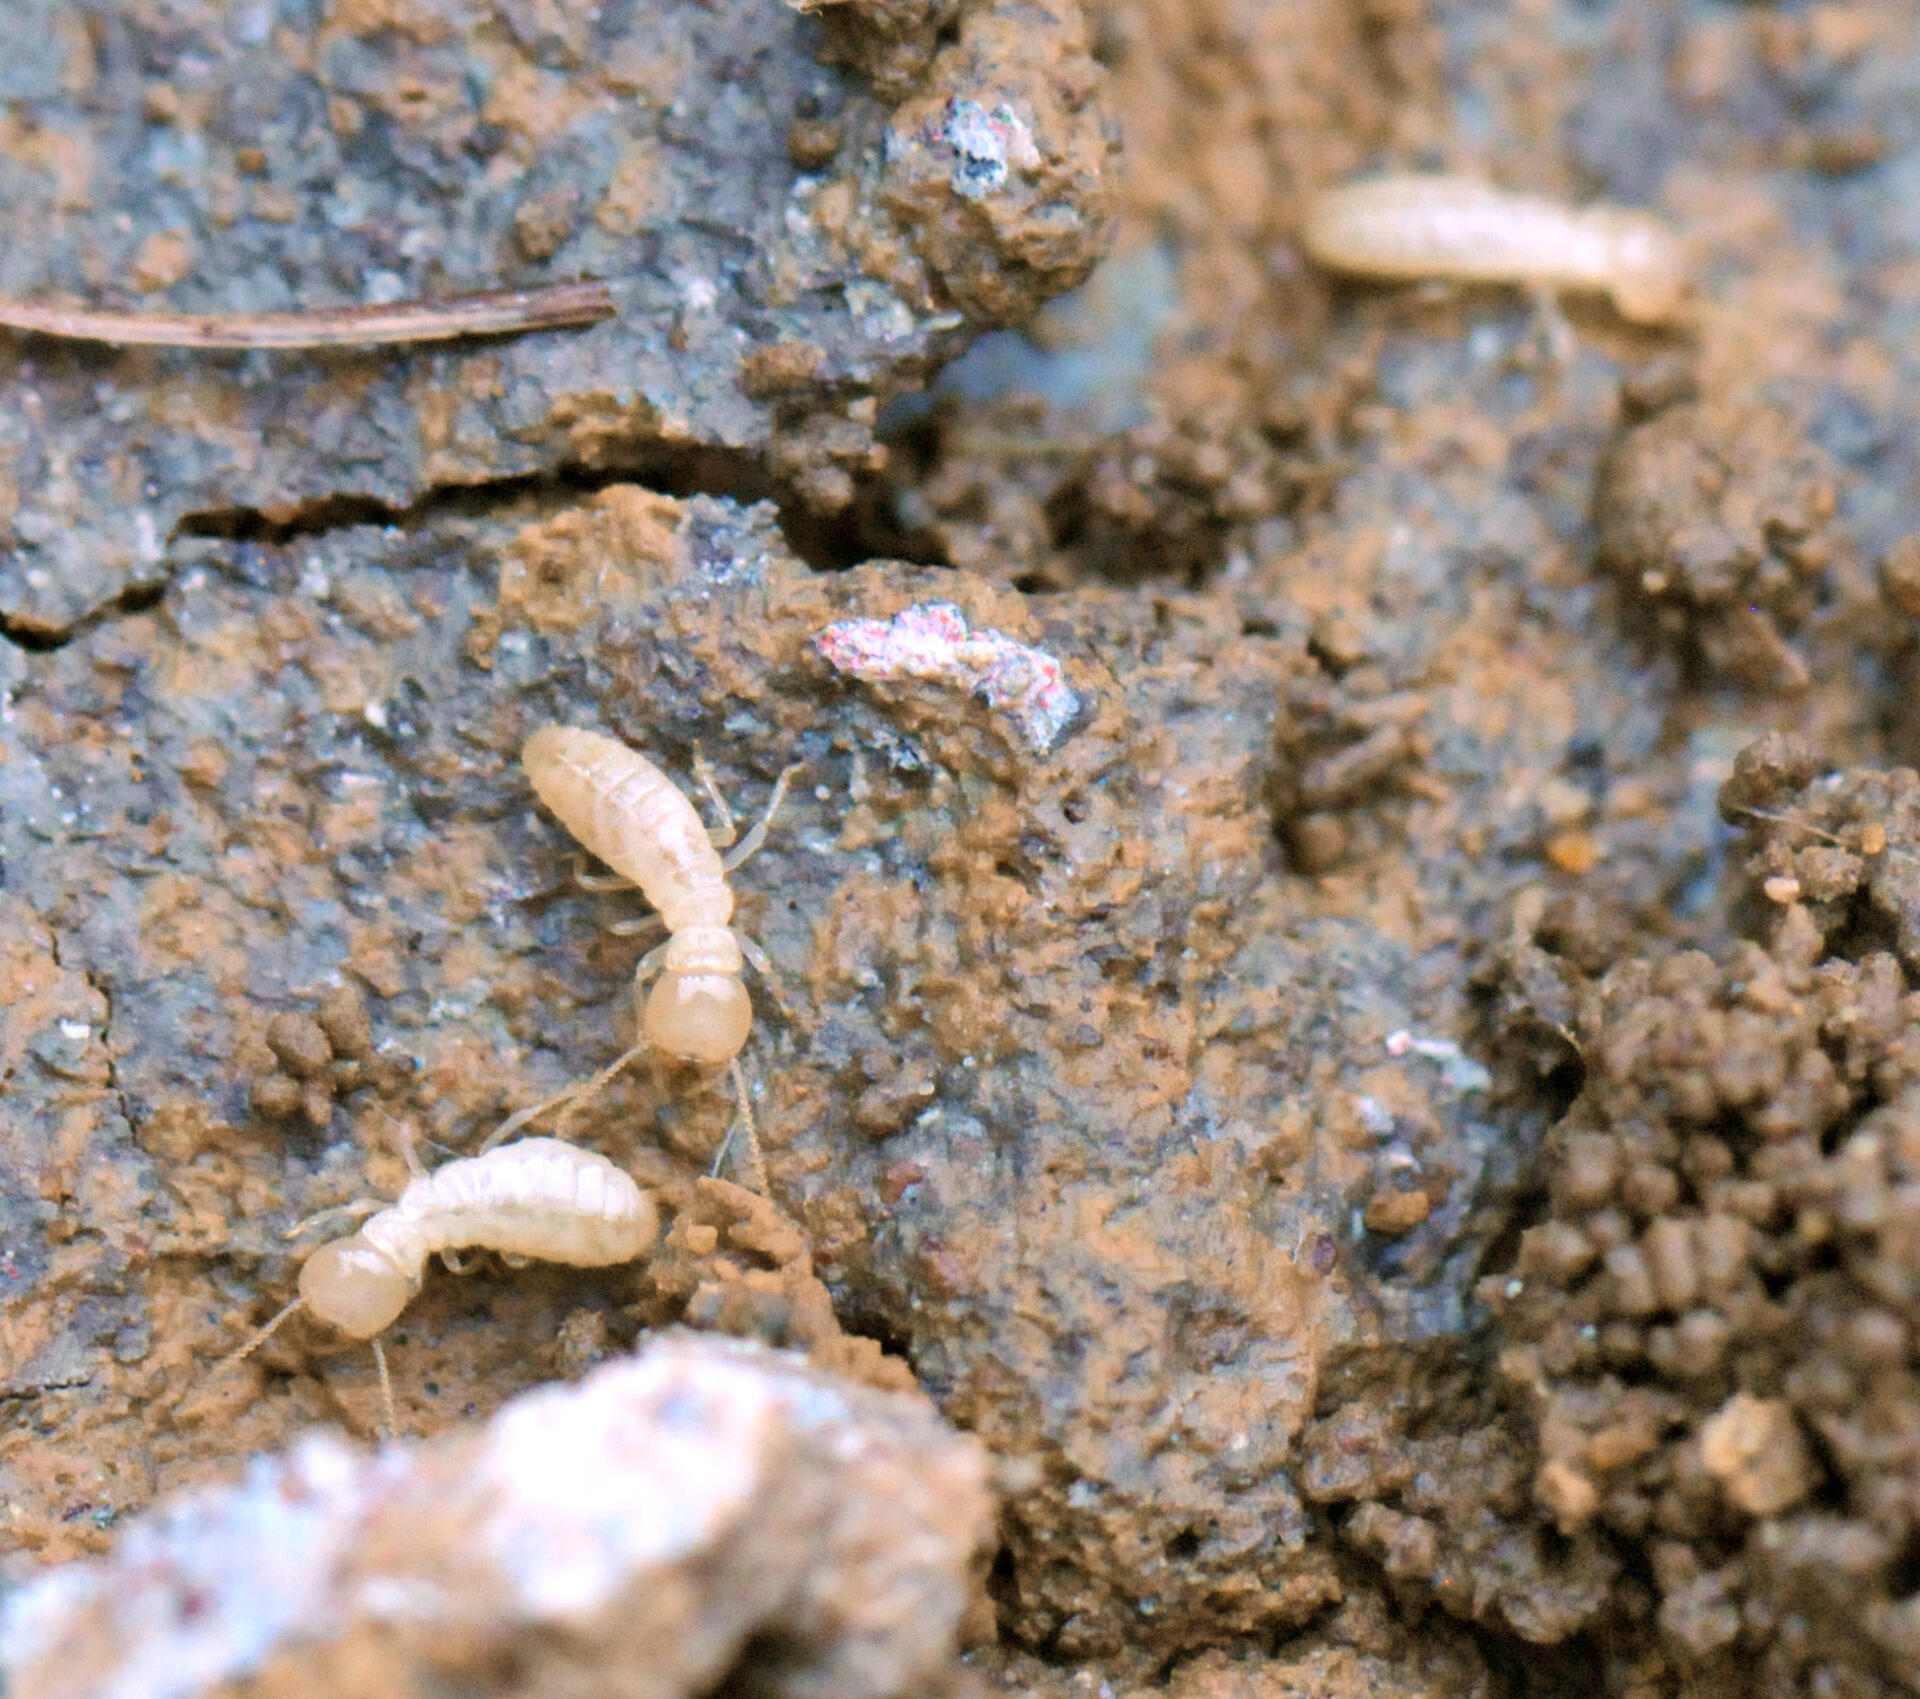 Eastern Subterranean Termite Workers